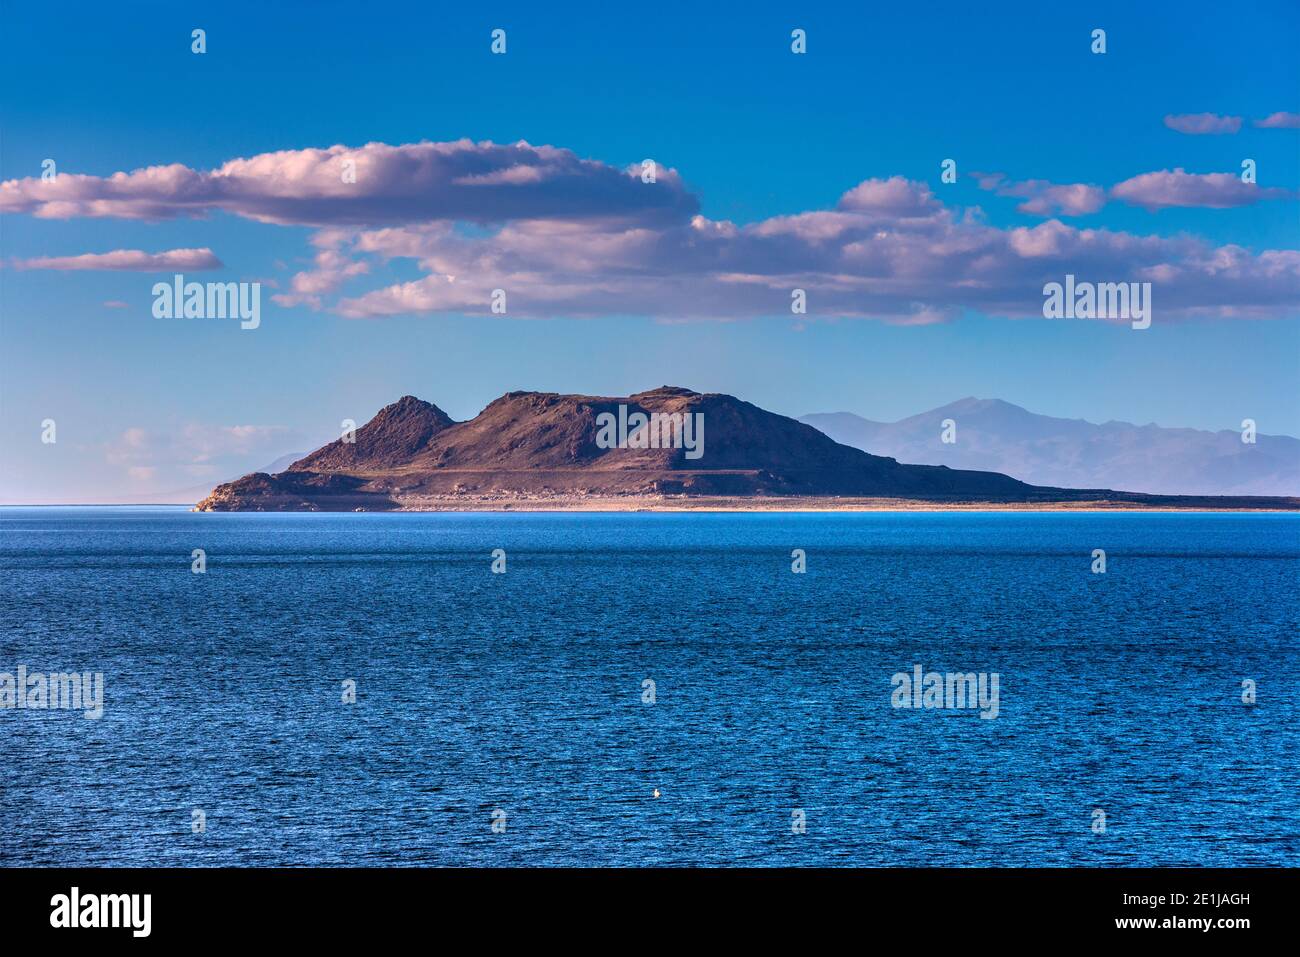 Isola di Anaho al lago Pyramid al tramonto, riserva indiana di Pyramid Lake, Nevada, Stati Uniti Foto Stock